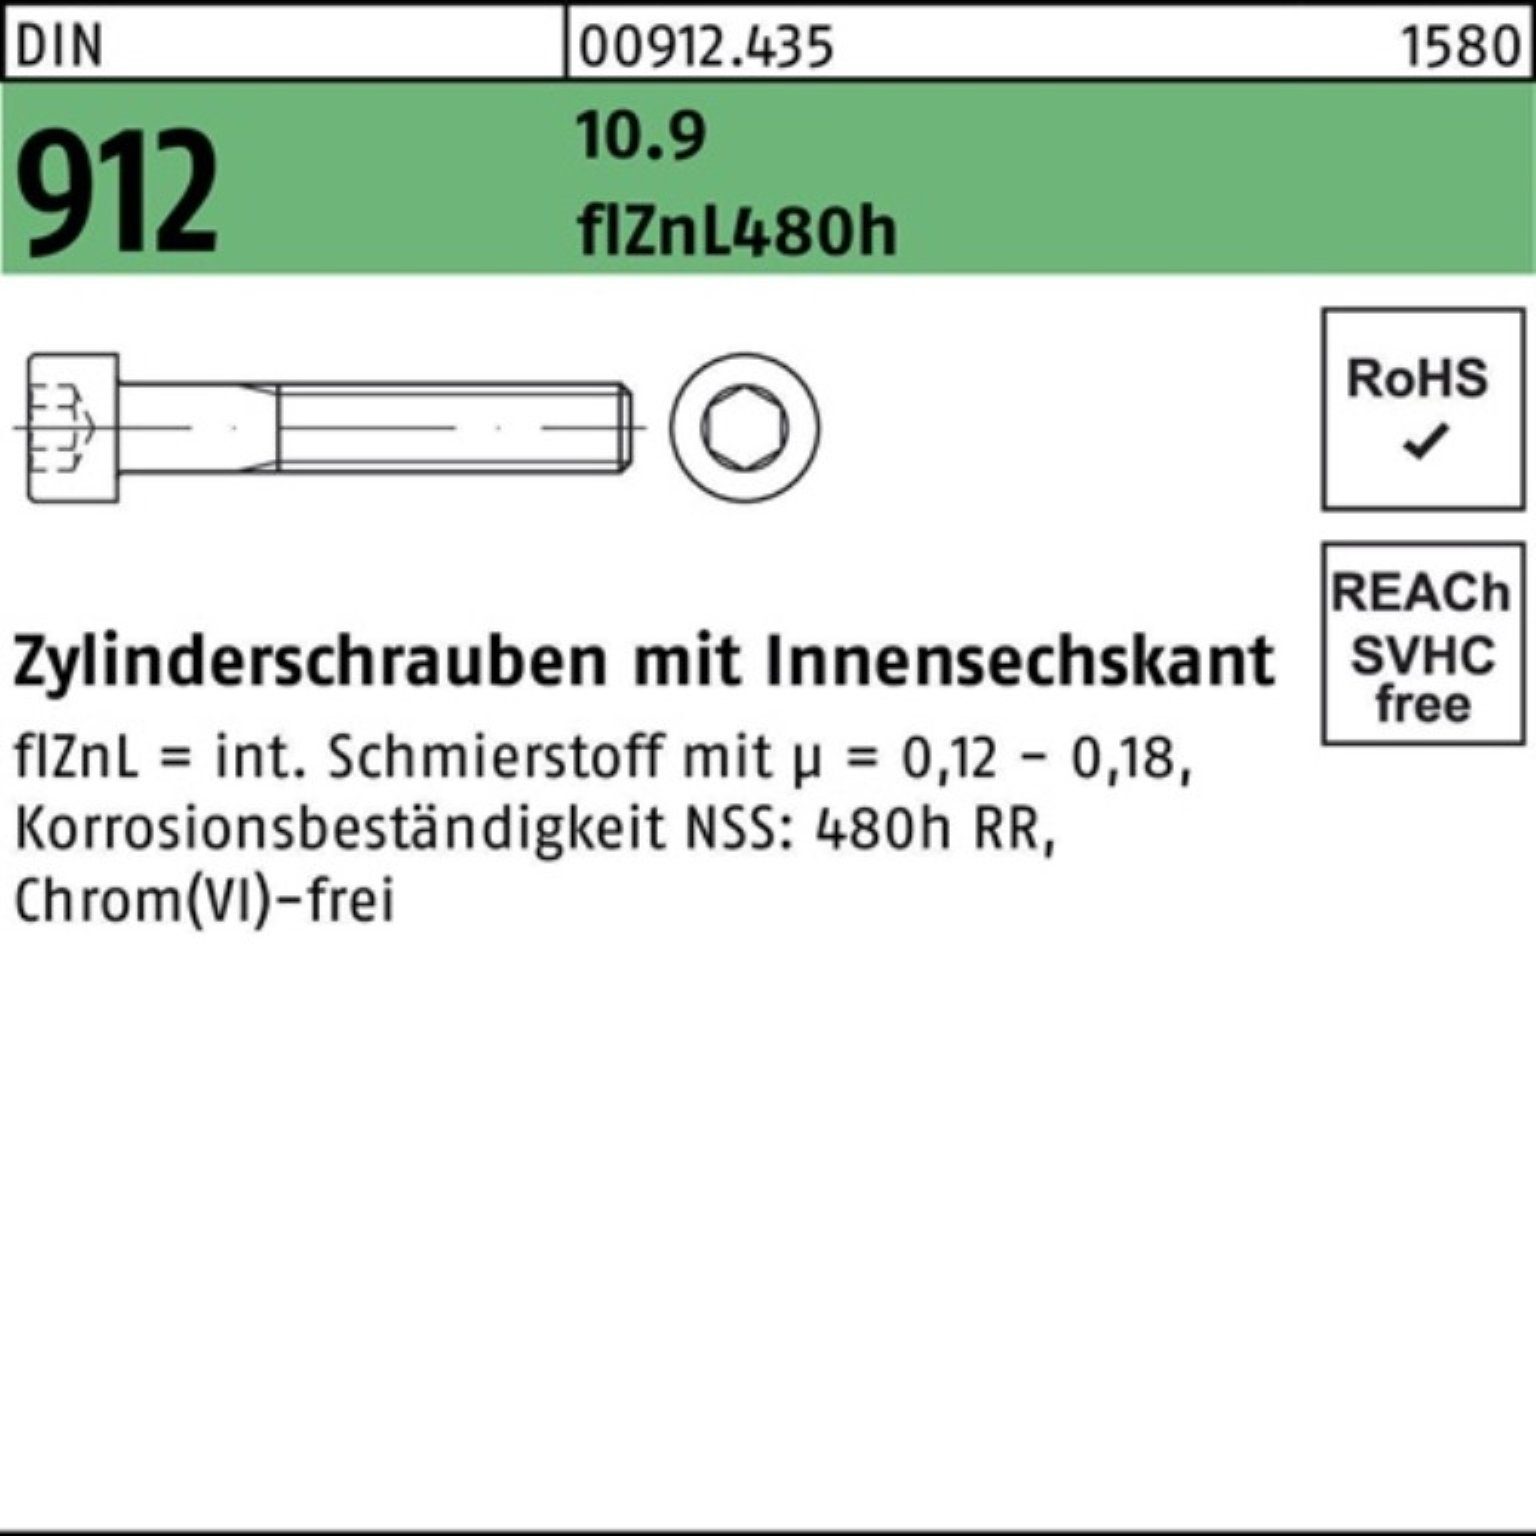 Reyher Zylinderschraube DIN Innen-6kt M6x65 flZnL/nc/x/x 200er Pack Zylinderschraube 912 10.9